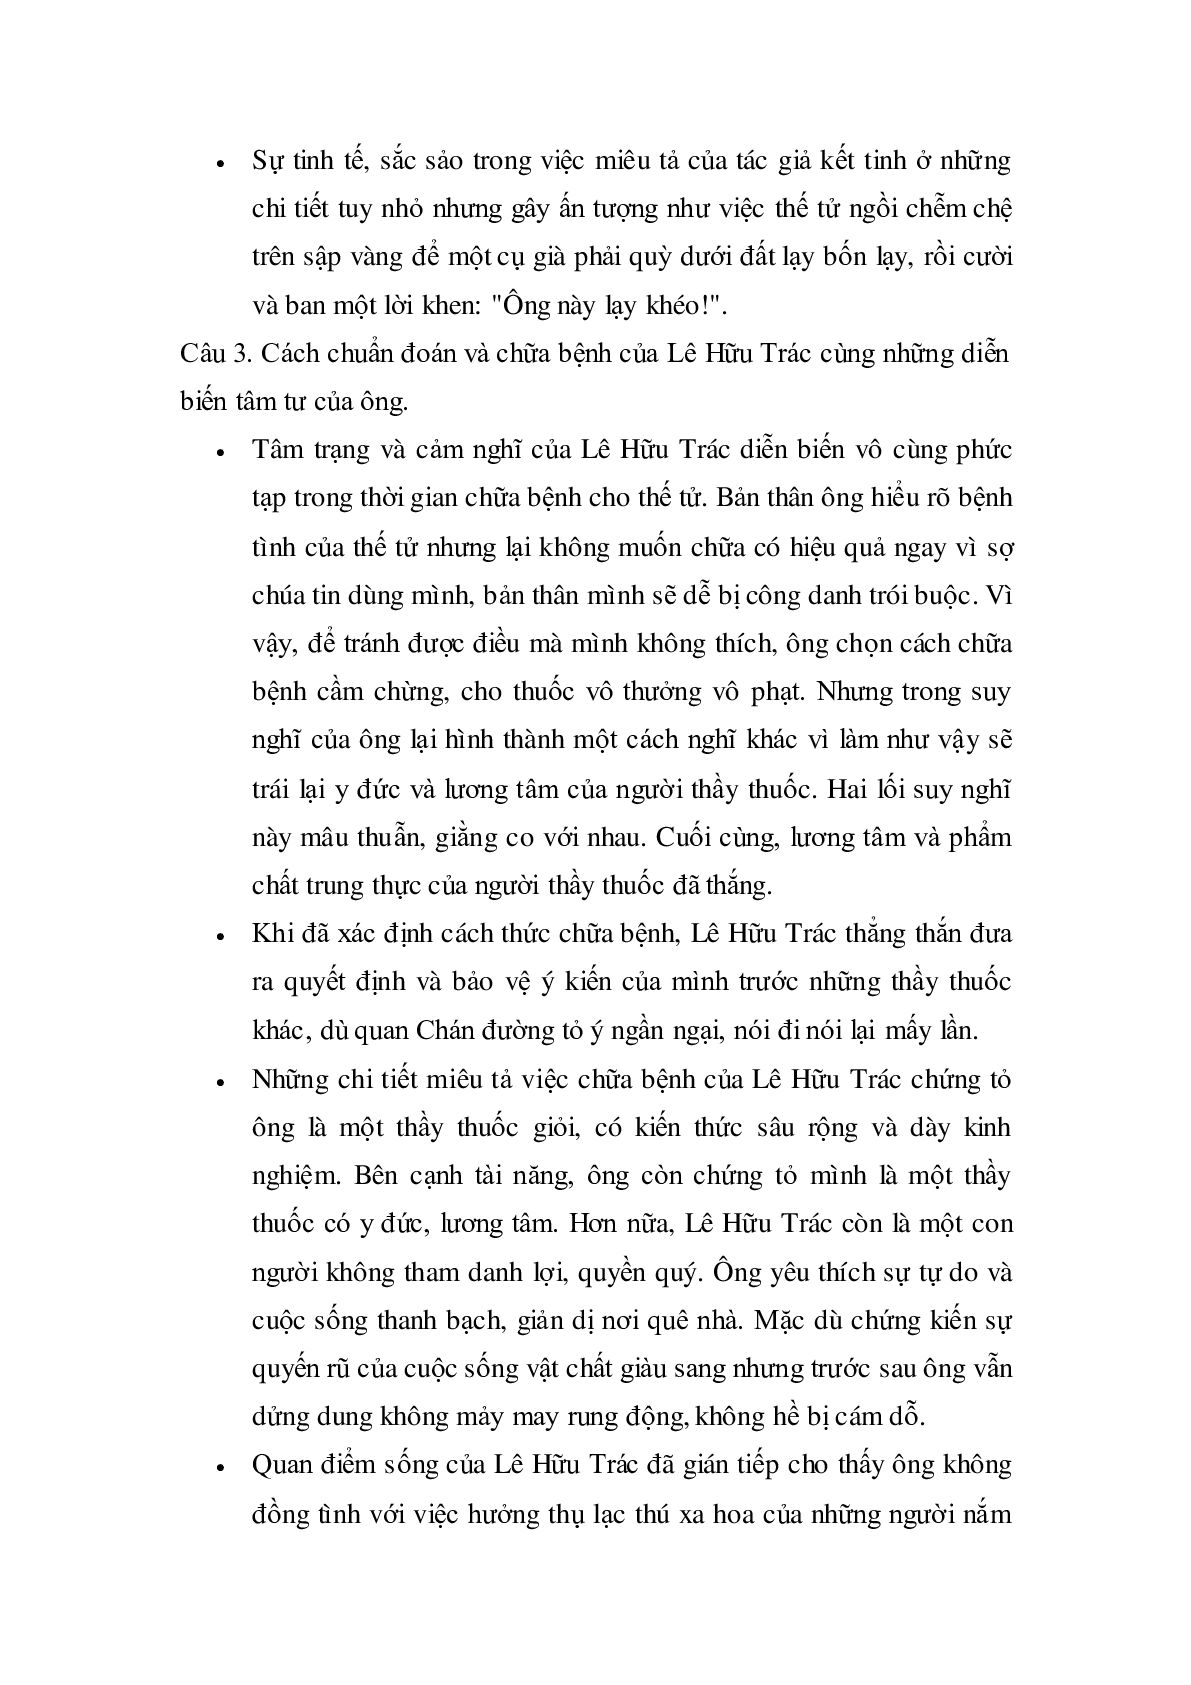 Soạn bài Vào phủ chúa Trịnh của Lê Hữu Trác - ngắn nhất Soạn văn 11 (trang 3)